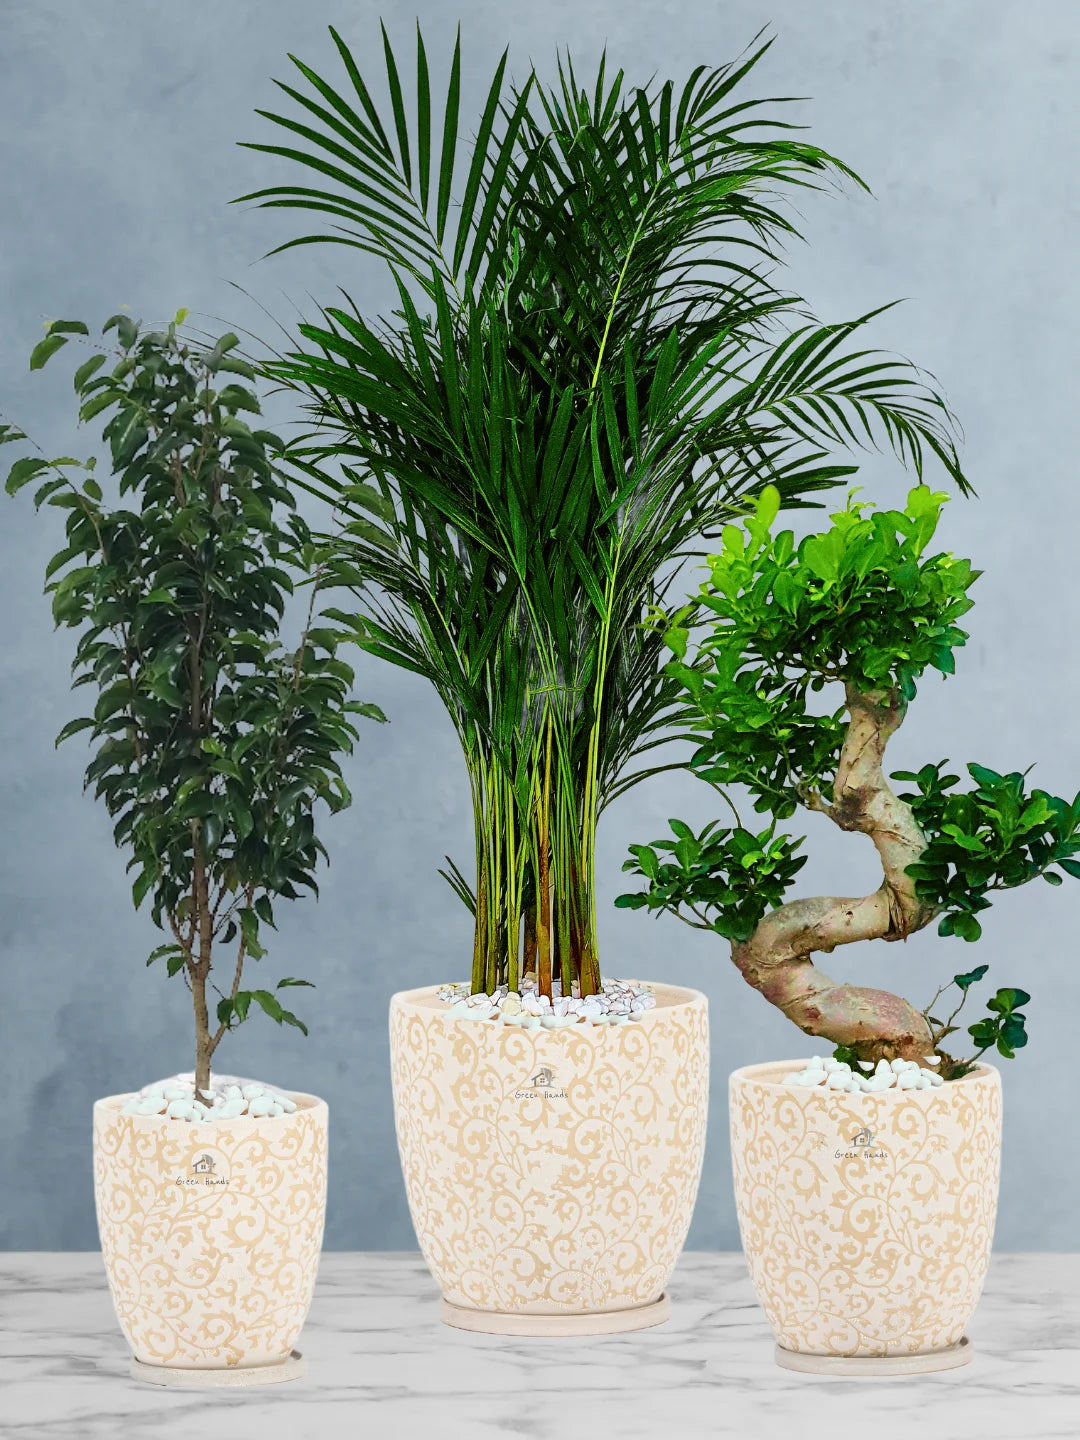 Premium Plants Bundle - Areca Palm, Ficus Benjamina, S Bonsai Tree in Premium Imari Black Floral Ceramic Pots